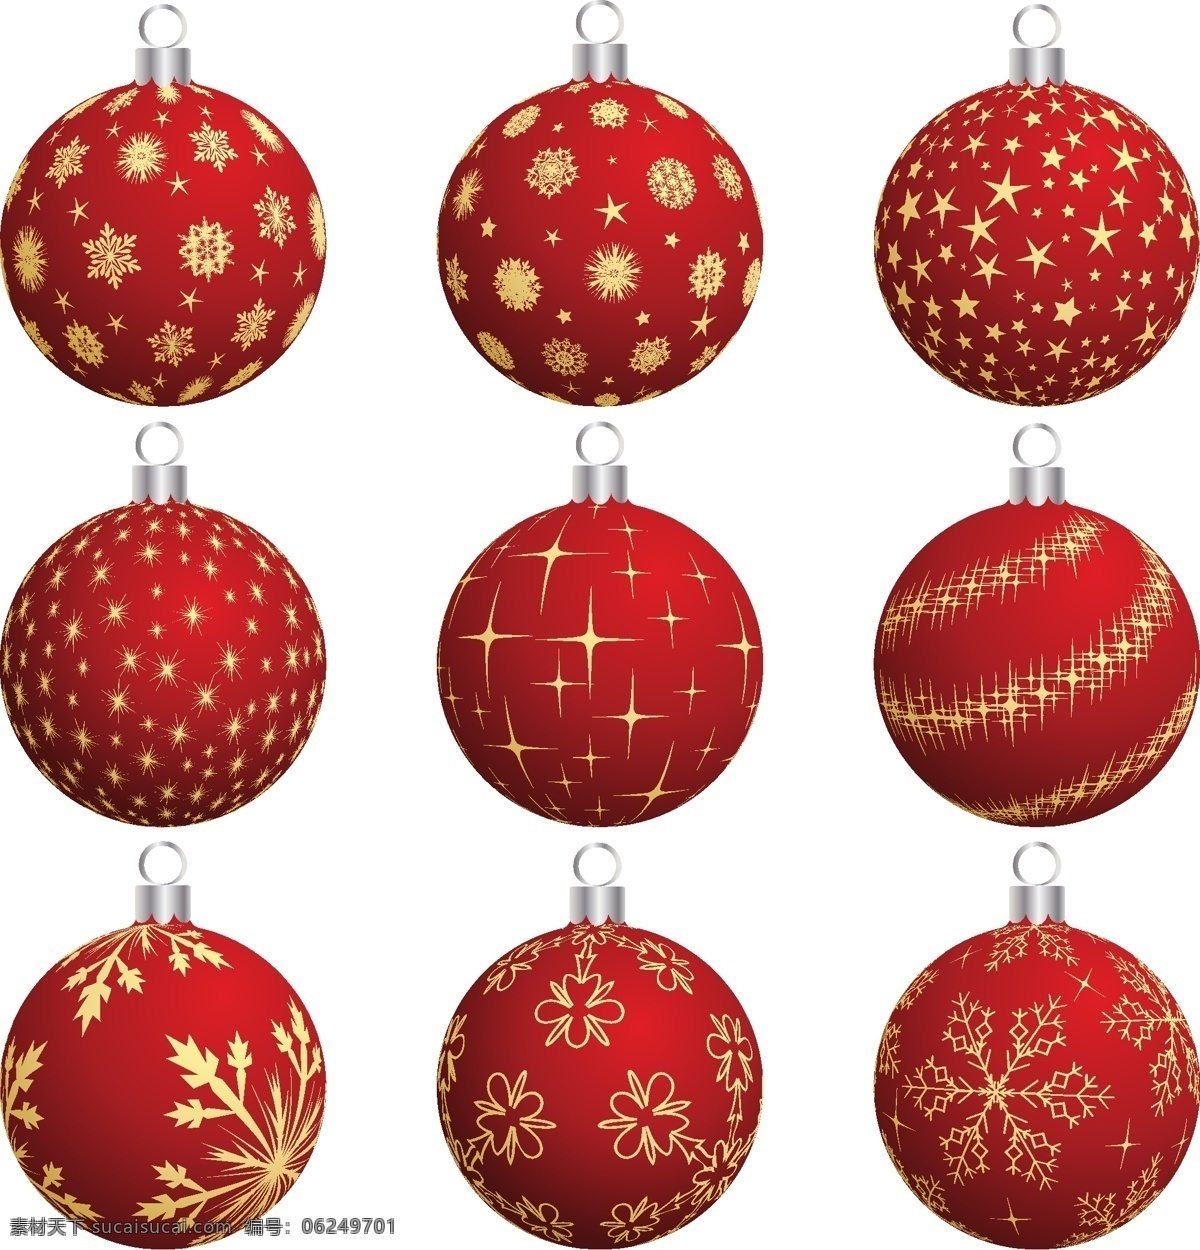 圣诞节 矢量 彩球 格式 欢乐 节庆 矢量素材 关键字 装饰彩球